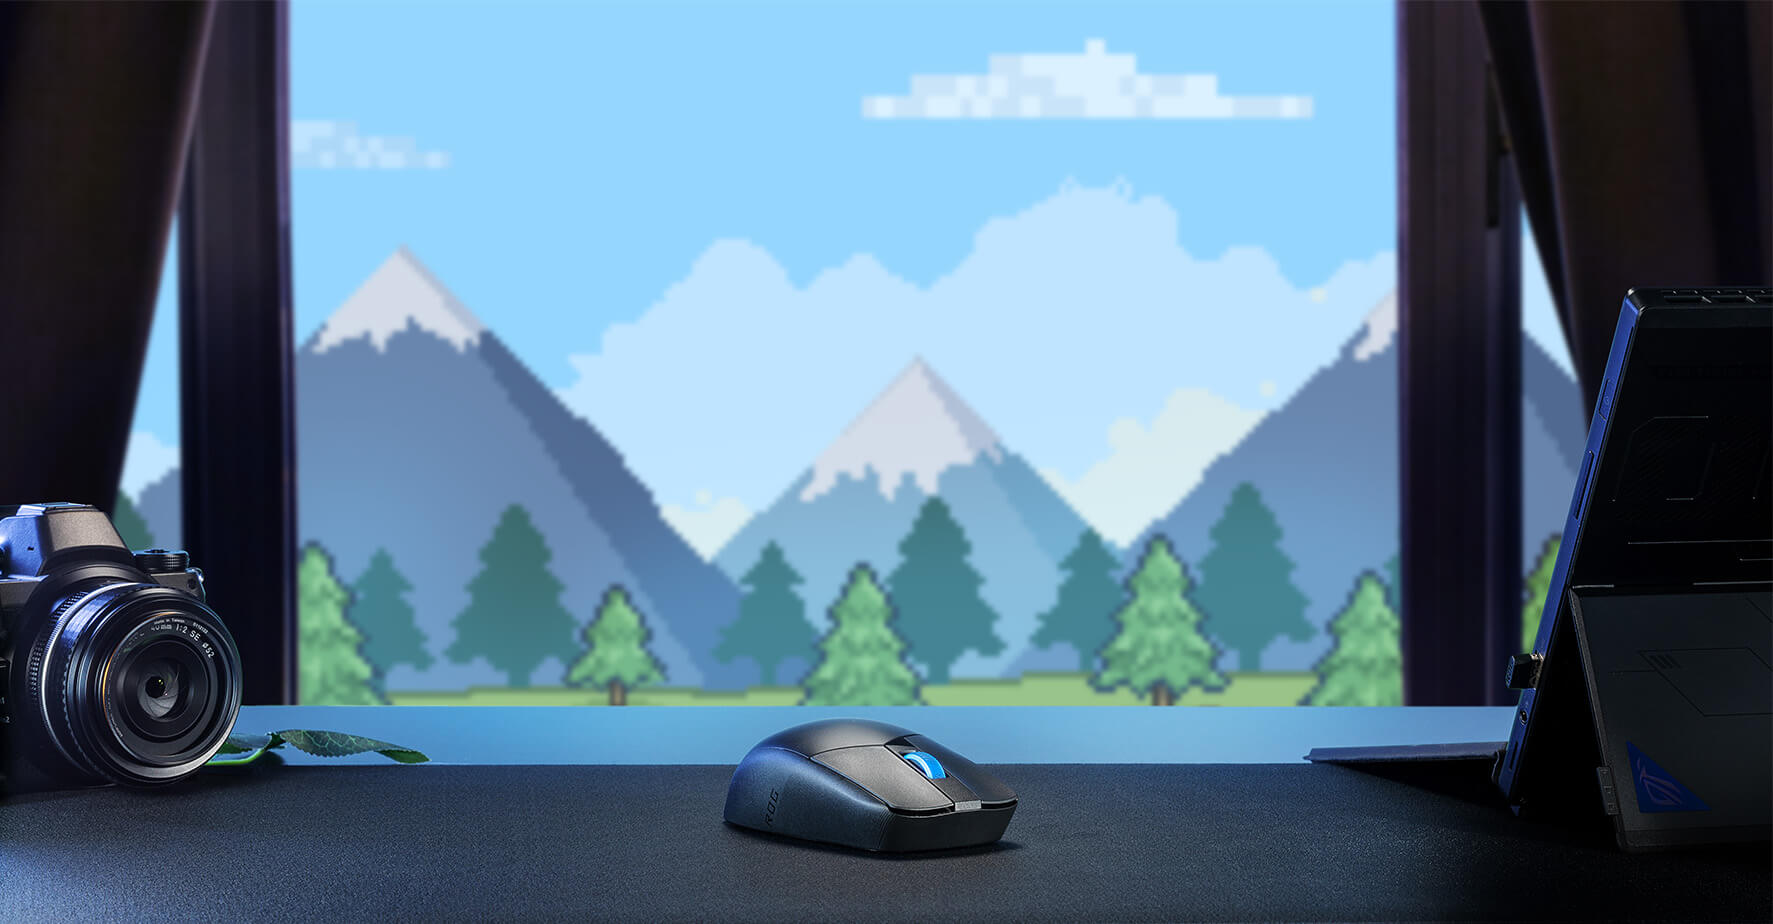 Die ROG Strix Impact III Wireless auf einem Tisch vor einem blauen Berghintergrund